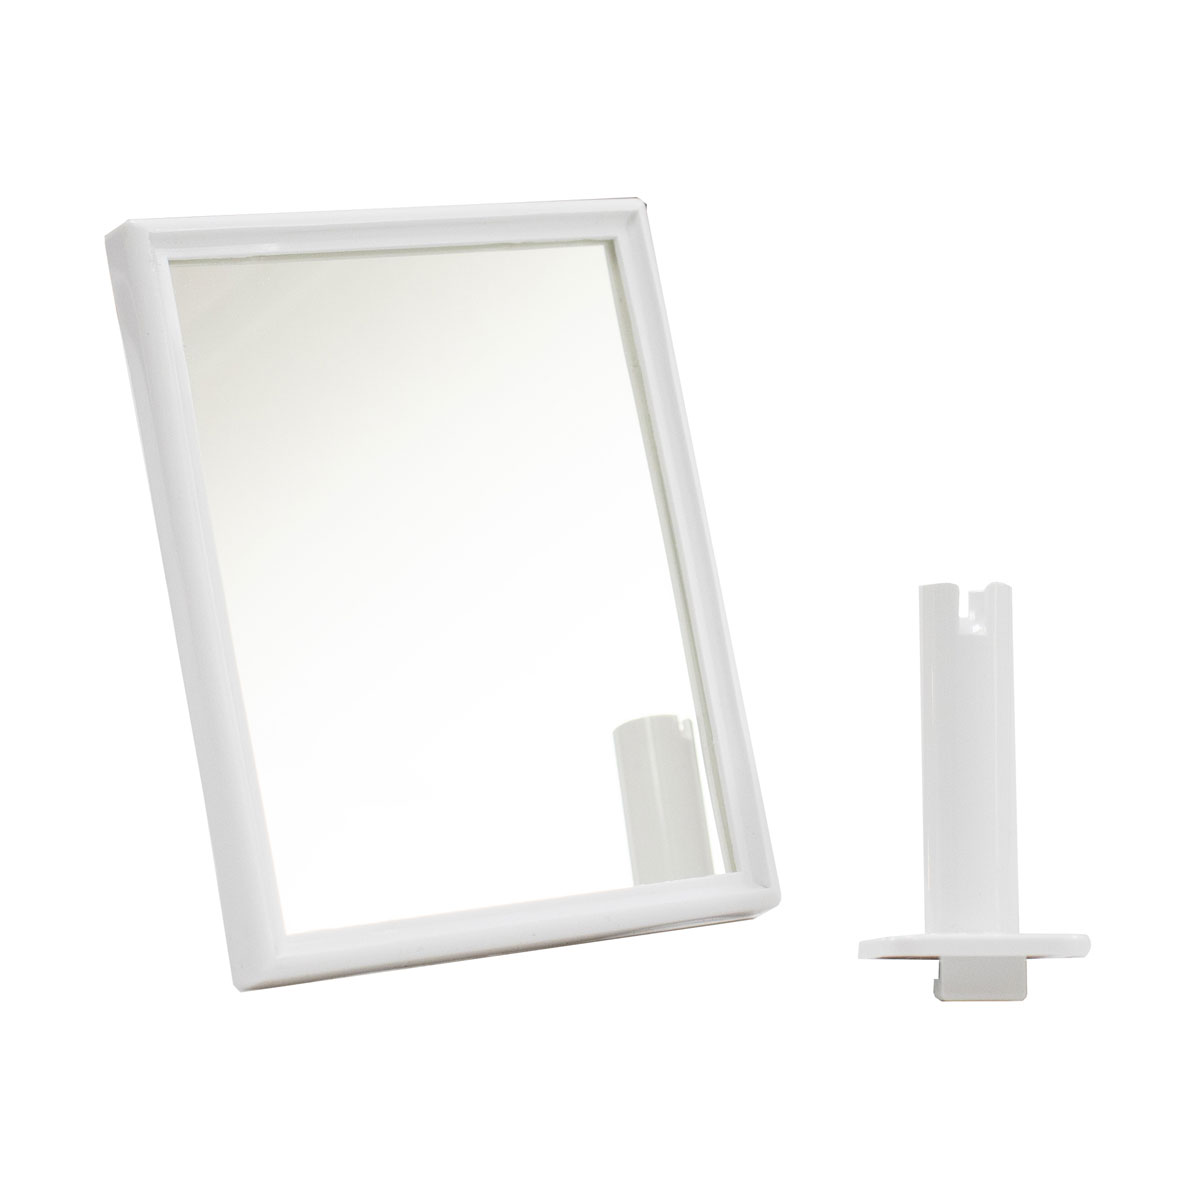 Mirror for 73350 Ulti-Mate Dispenser White